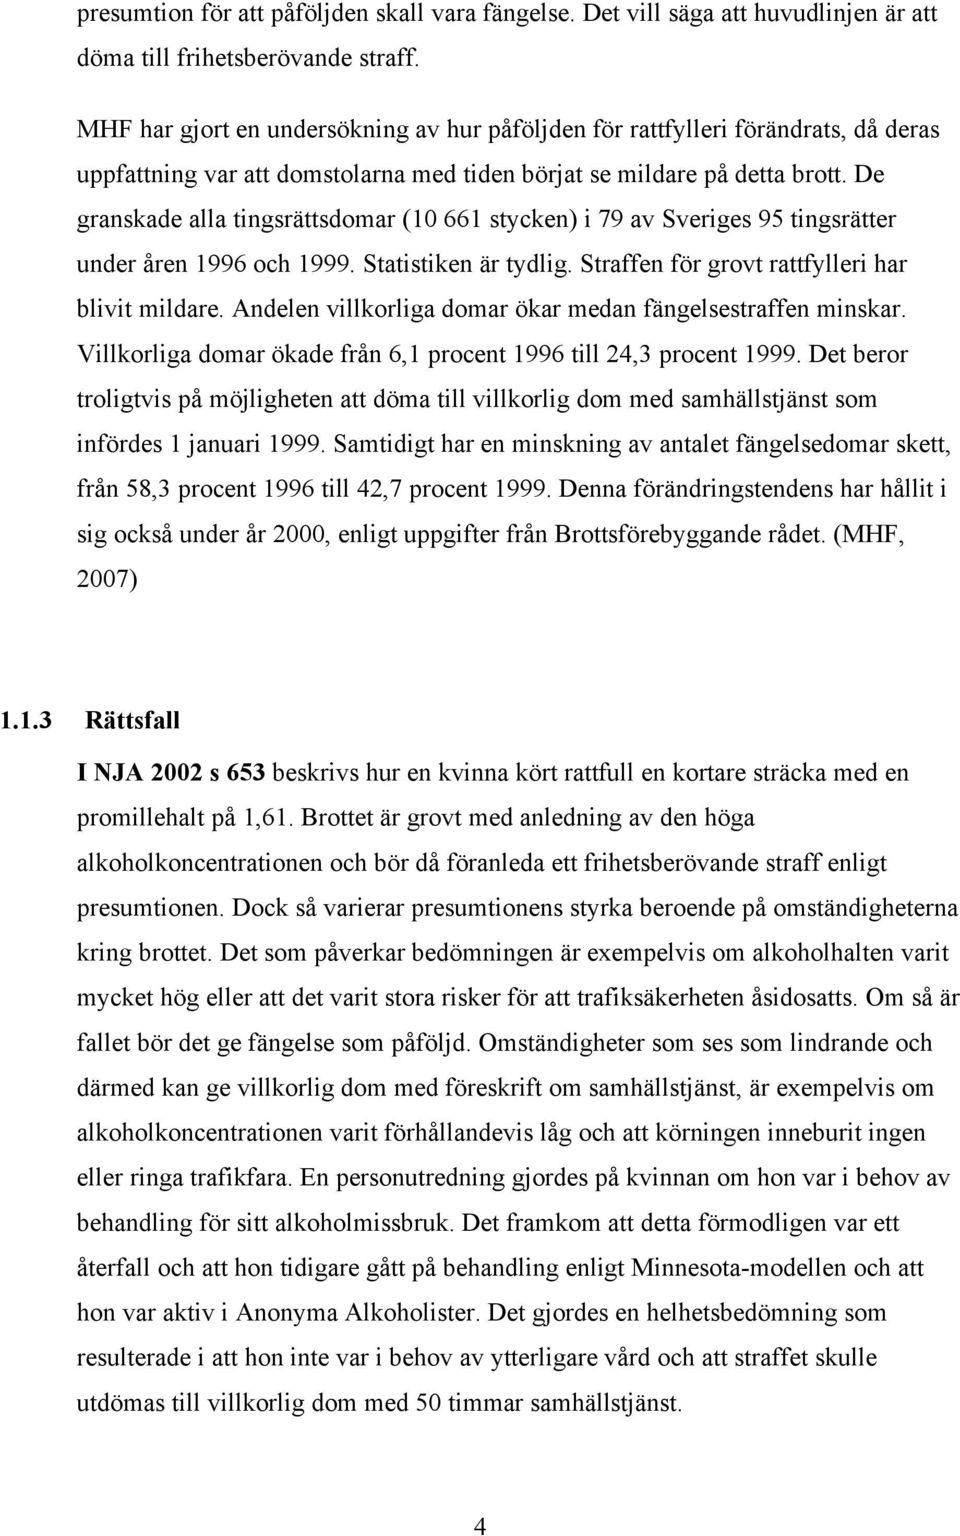 De granskade alla tingsrättsdomar (10 661 stycken) i 79 av Sveriges 95 tingsrätter under åren 1996 och 1999. Statistiken är tydlig. Straffen för grovt rattfylleri har blivit mildare.